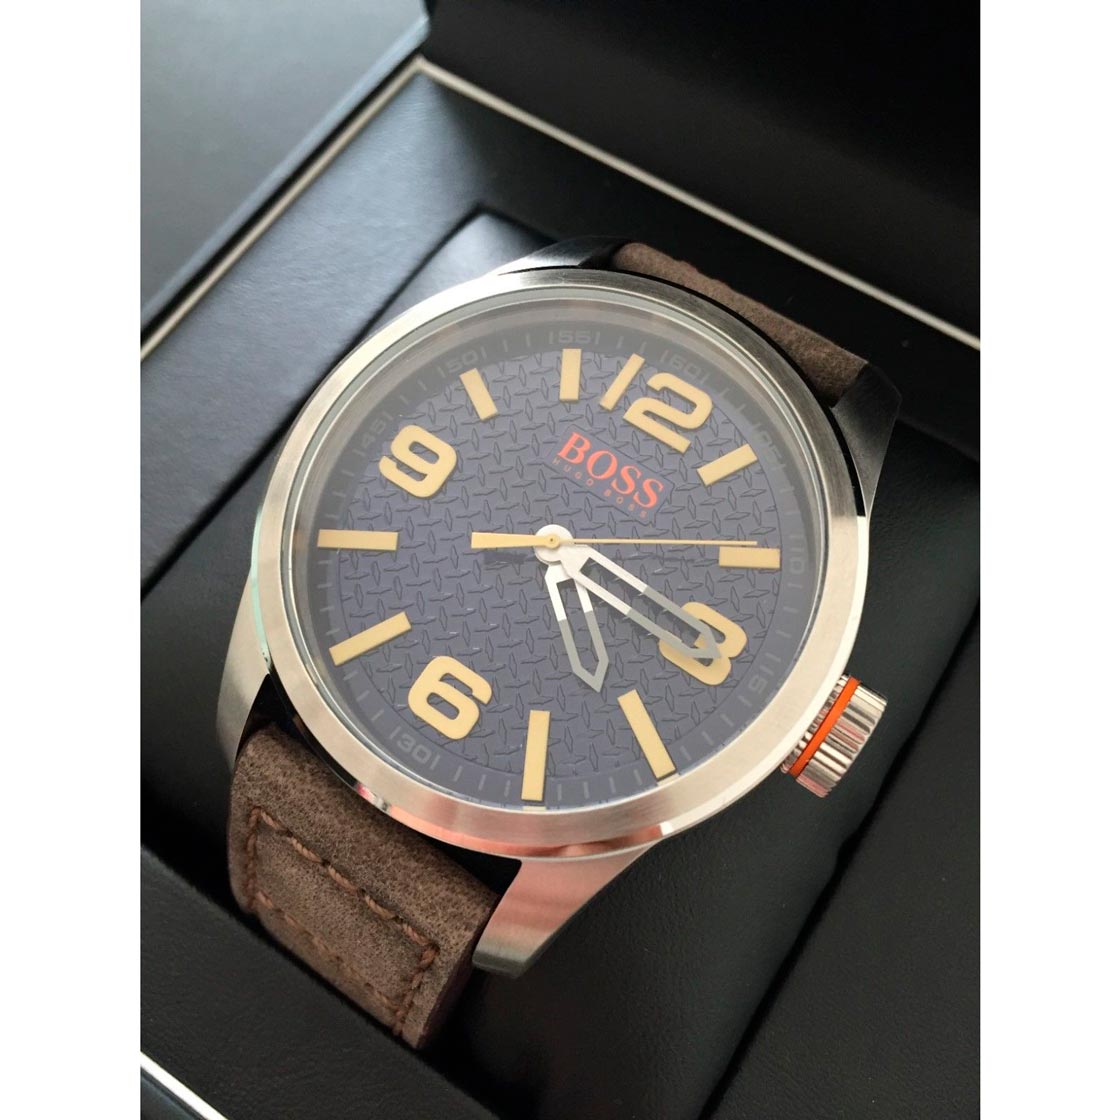 Reloj Hugo Boss Paris 1513352 Para Hombre Acero Inoxidable Correa de Cuero Marron Azul